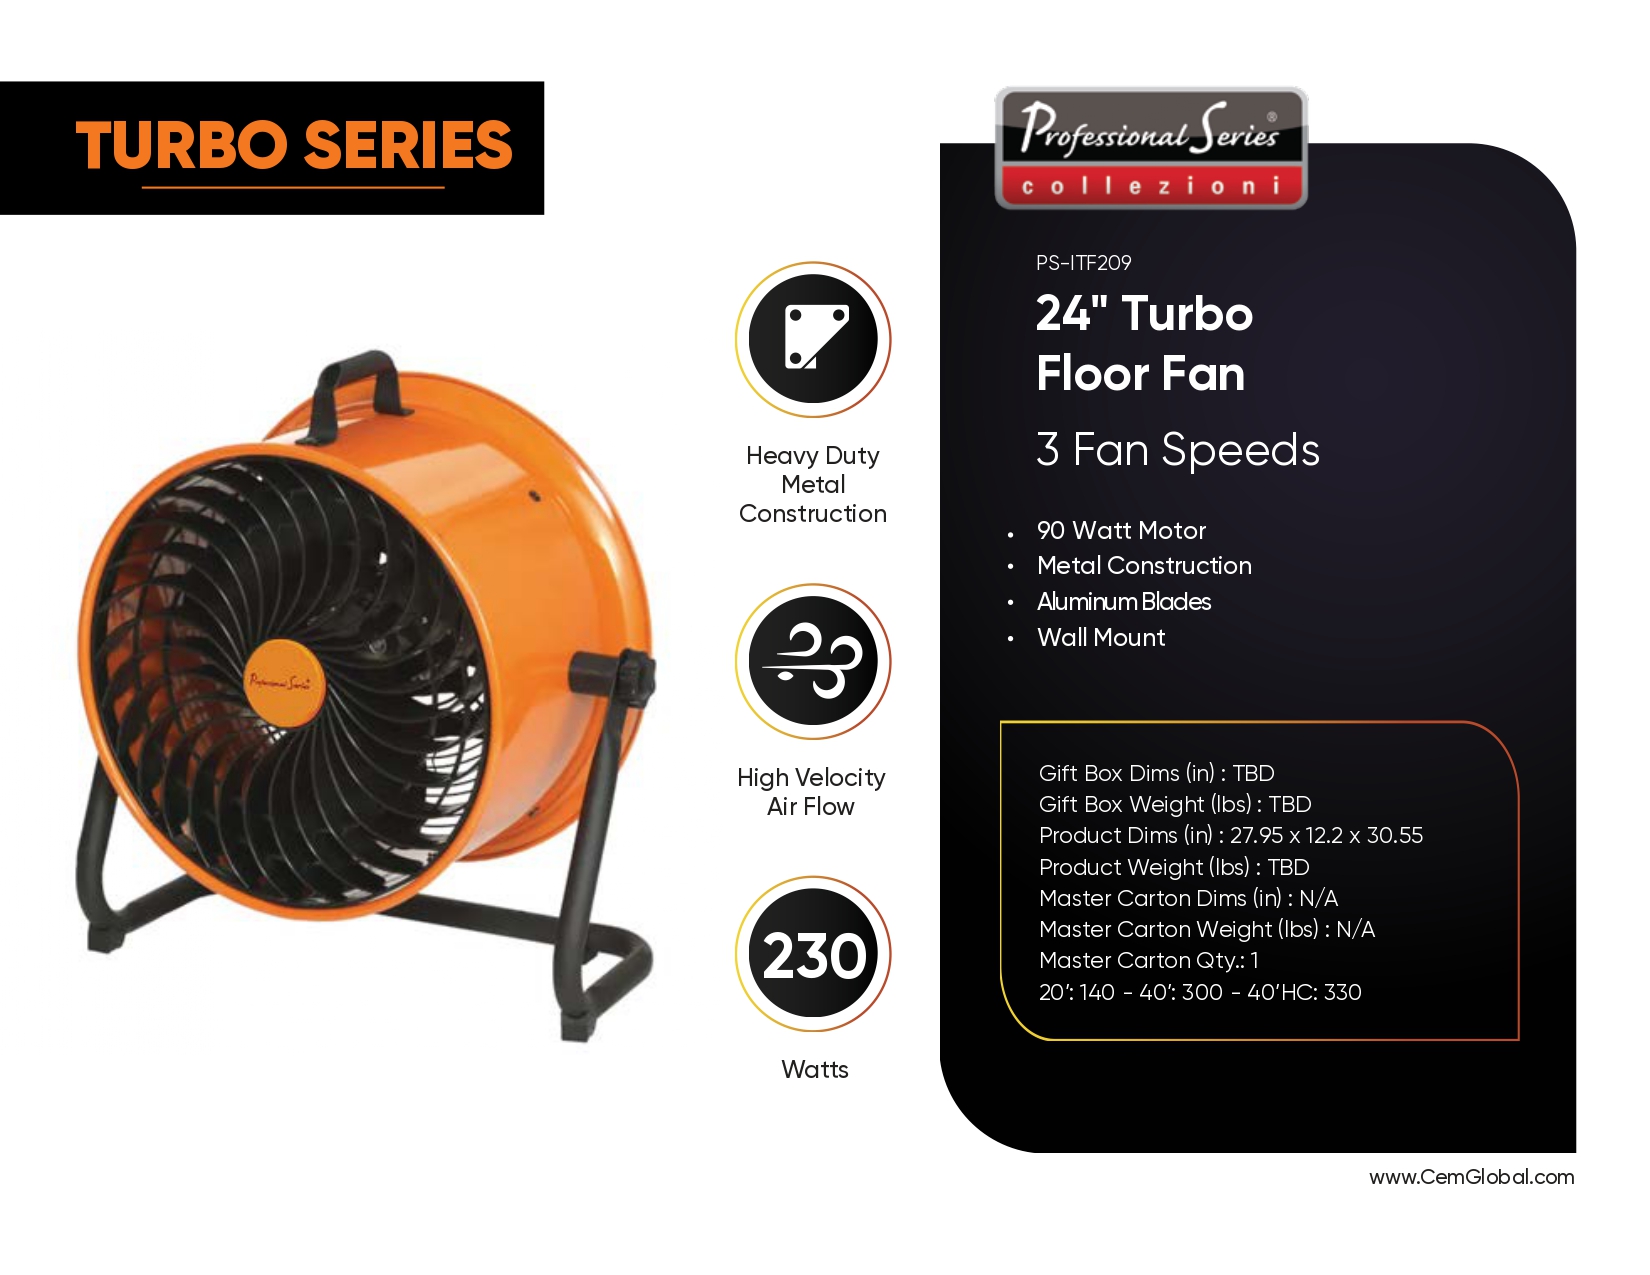 24" Turbo Floor Fan